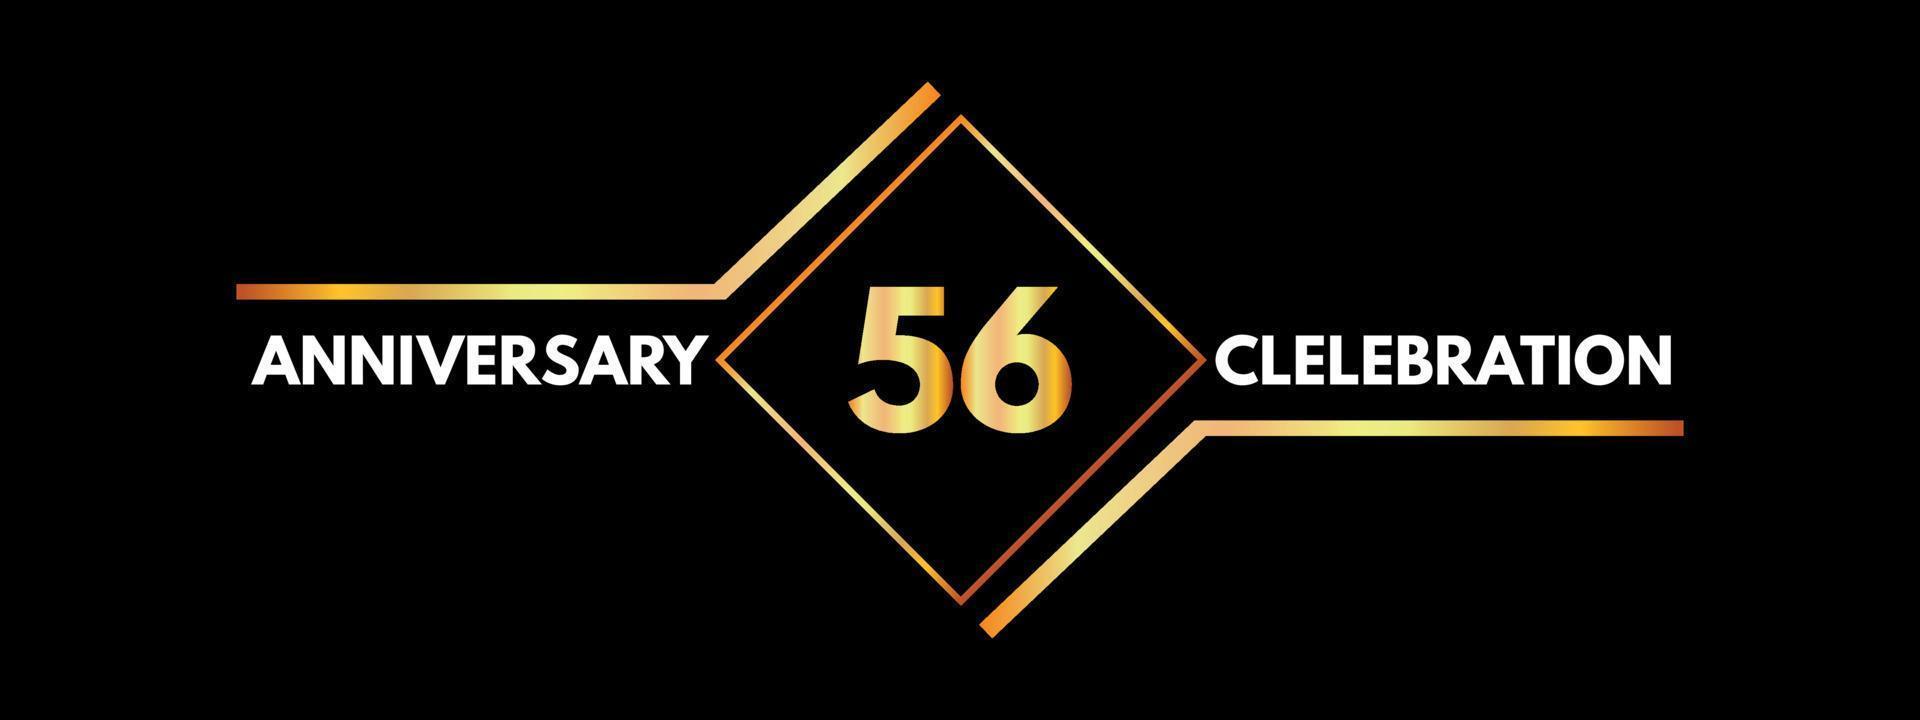 Celebrazione dell'anniversario di 56 anni con cornice dorata isolata su sfondo nero. disegno vettoriale per biglietto di auguri, festa di compleanno, matrimonio, festa evento, invito, cerimonia. Logo dell'anniversario di 56 anni.